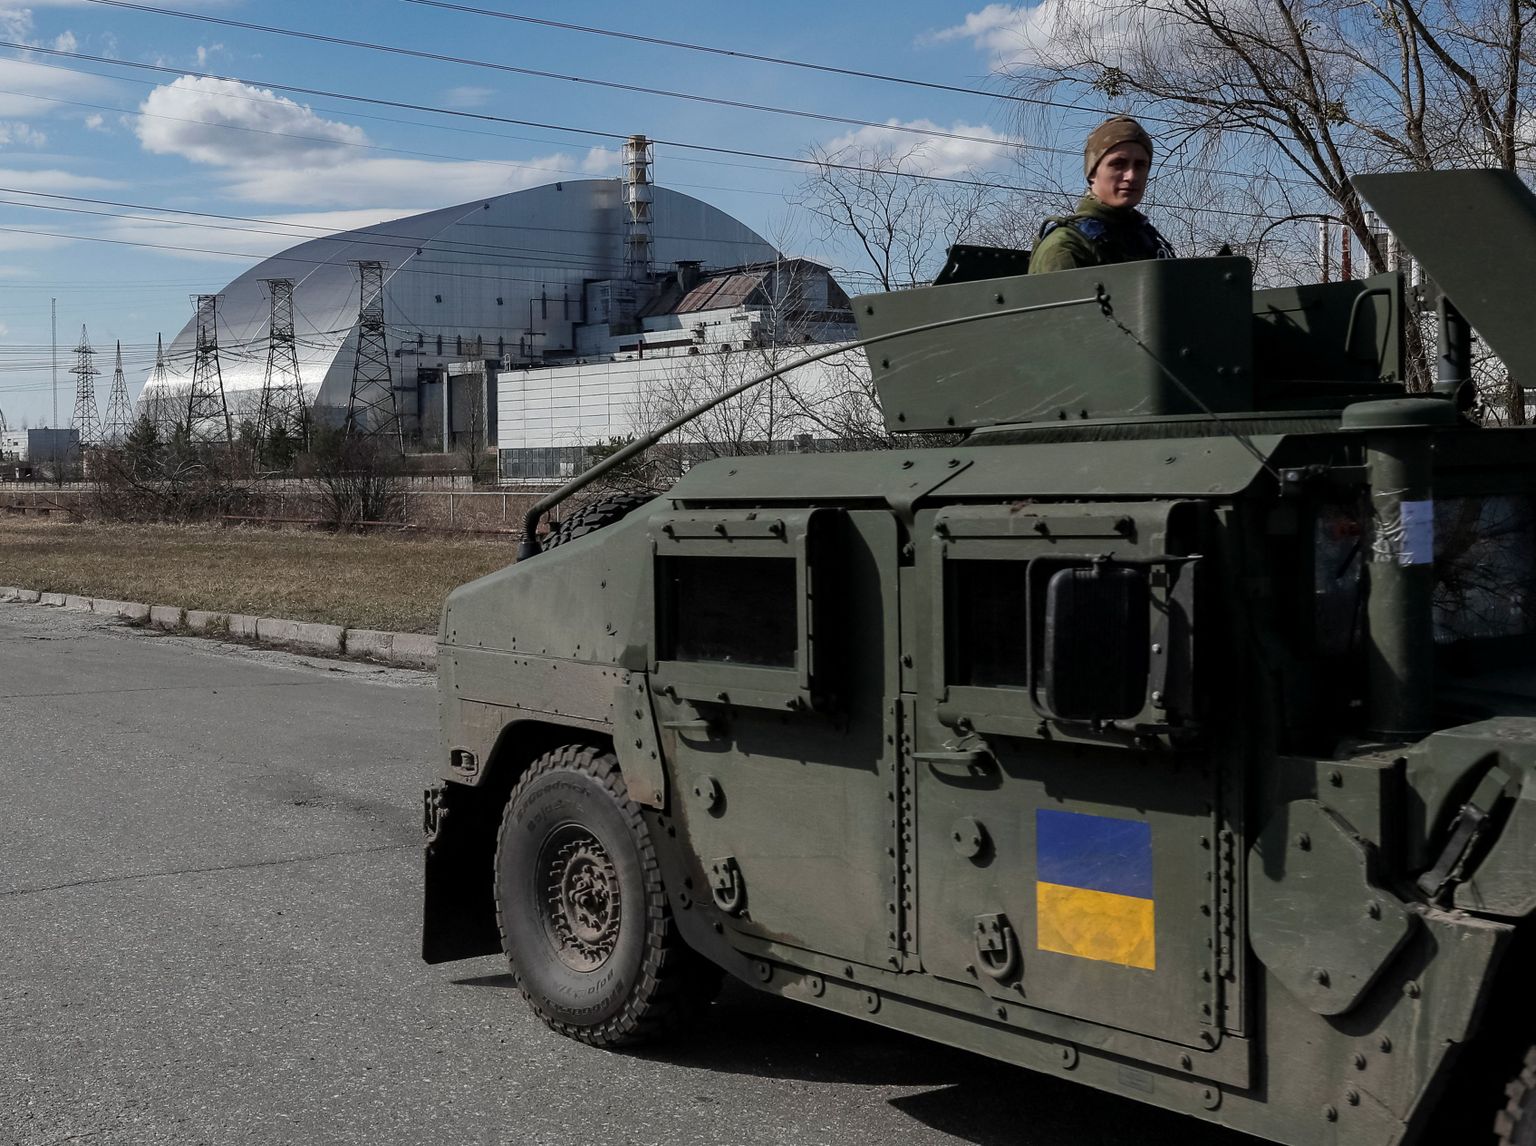 Ukraina rahvuskaardi sõdurid patrullimas Tšornobõli tuumajaama juures. Foto on tehtud 7. aprillil 2022